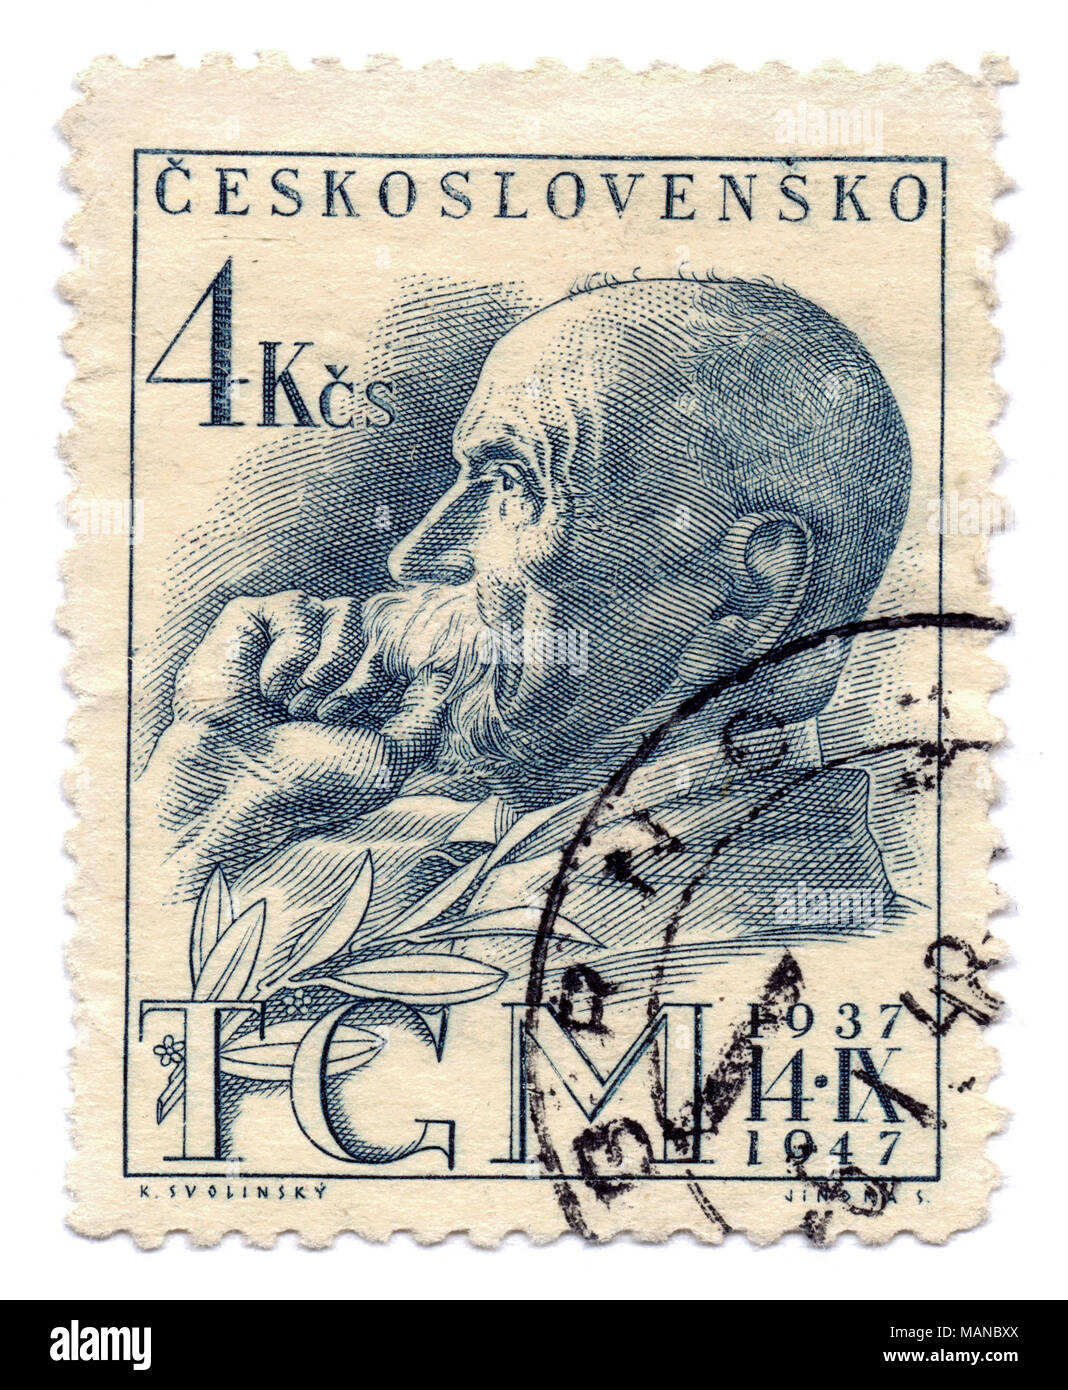 Tomas Garrigue Masaryk, erste tschechoslowakische Präsident (1918-1935) auf Briefmarken, in Prag, Tschechoslowakei (heute Tschechien), 1947 gedruckt. Stockfoto